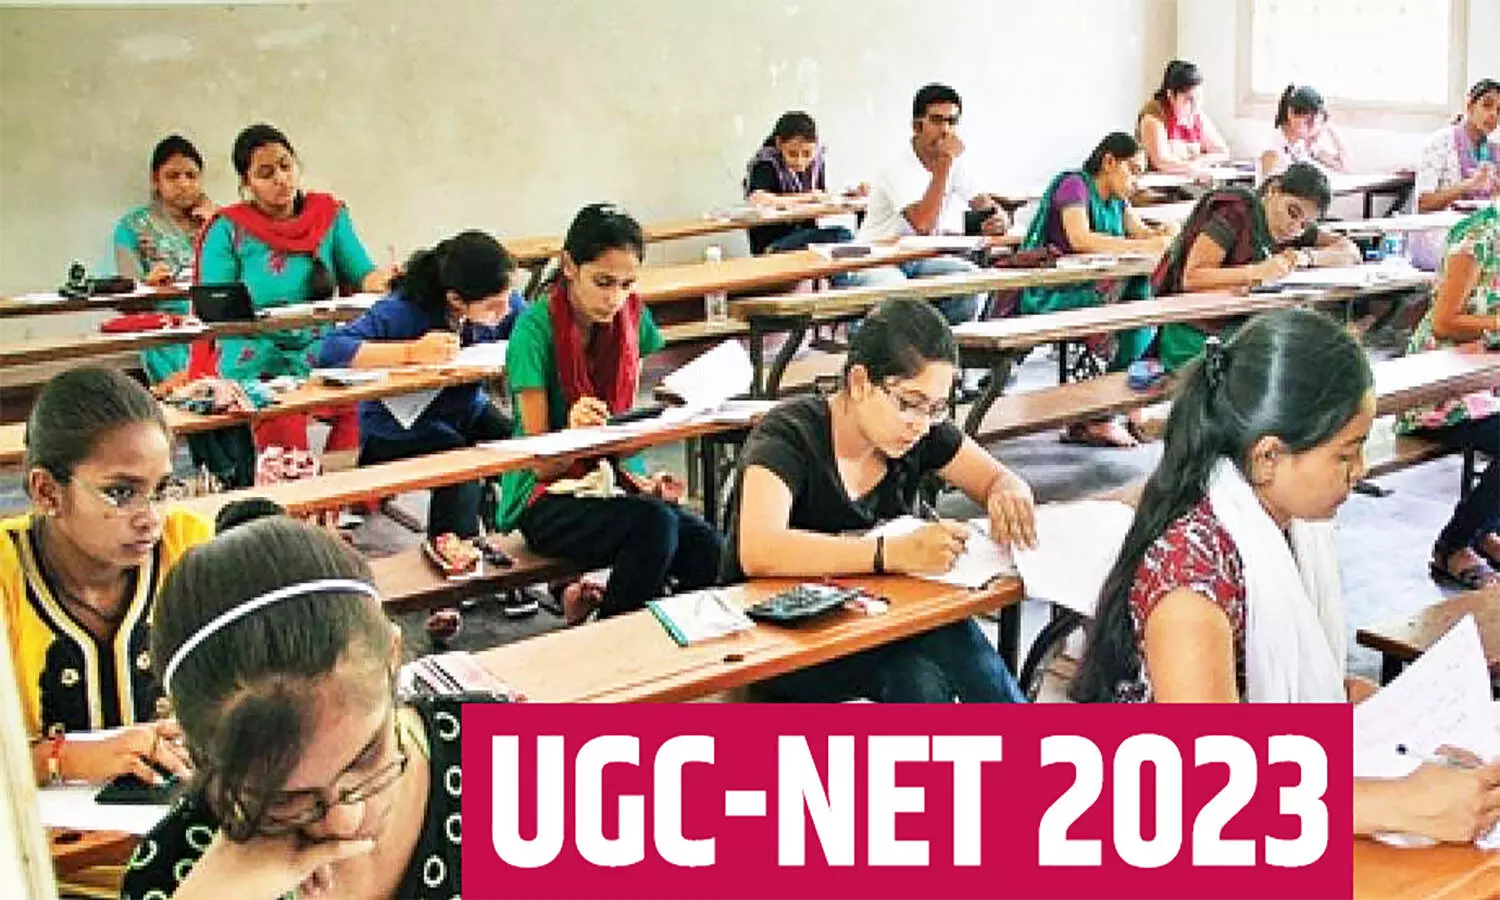 UGC NET 2023: यूजीसी नेट के लिए 10 अप्रैल तक करवा सकेंगे रजिस्ट्रेशन, कब होंगे एग्जाम जान लें